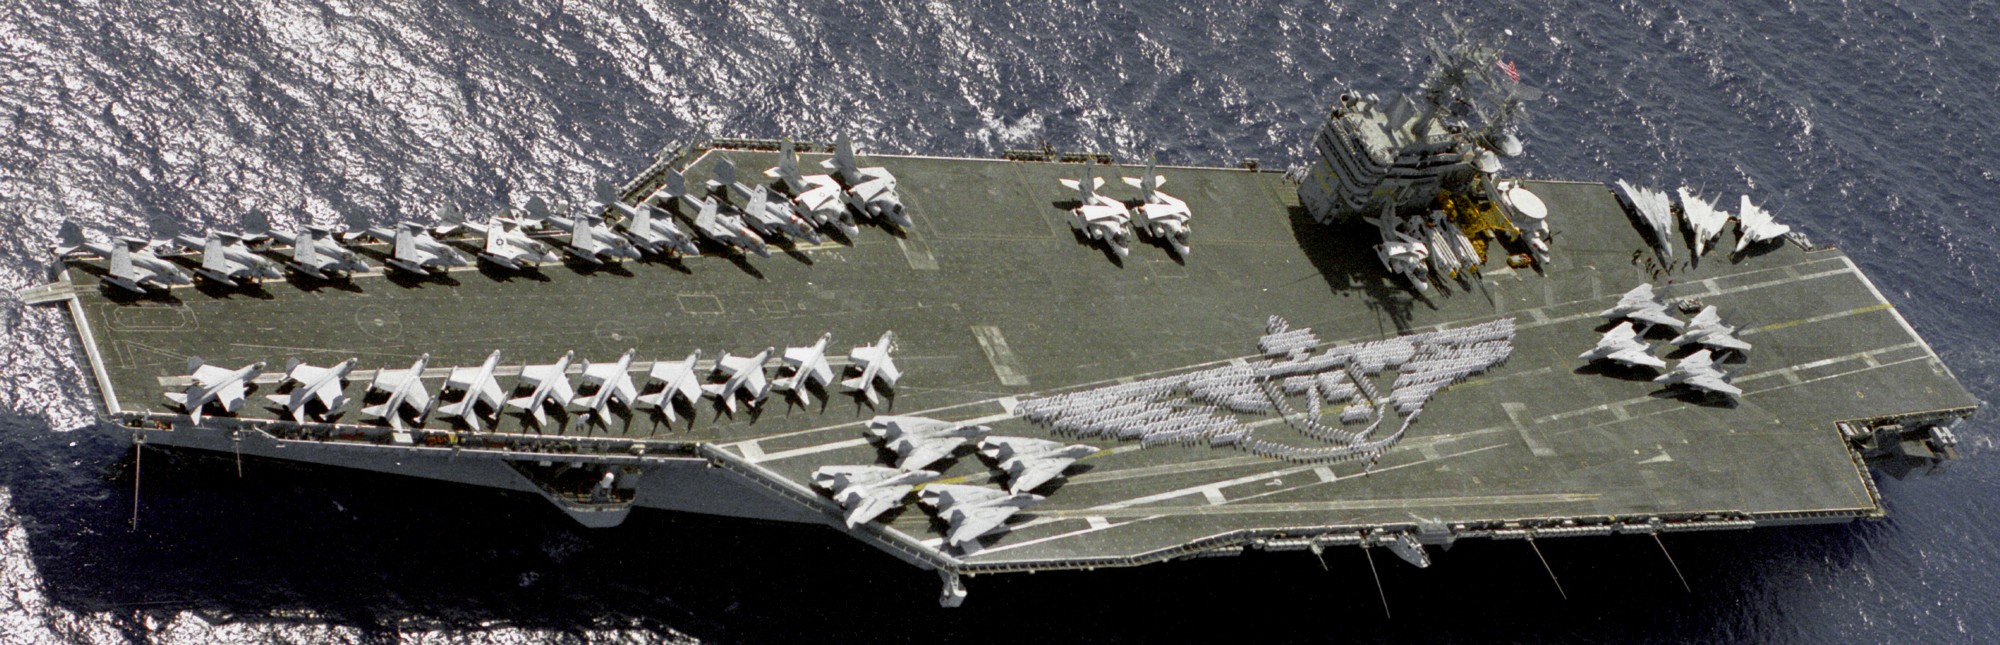 cvn-70 uss carl vinson nimitz class aircraft carrier air wing cvw-15 us navy 60